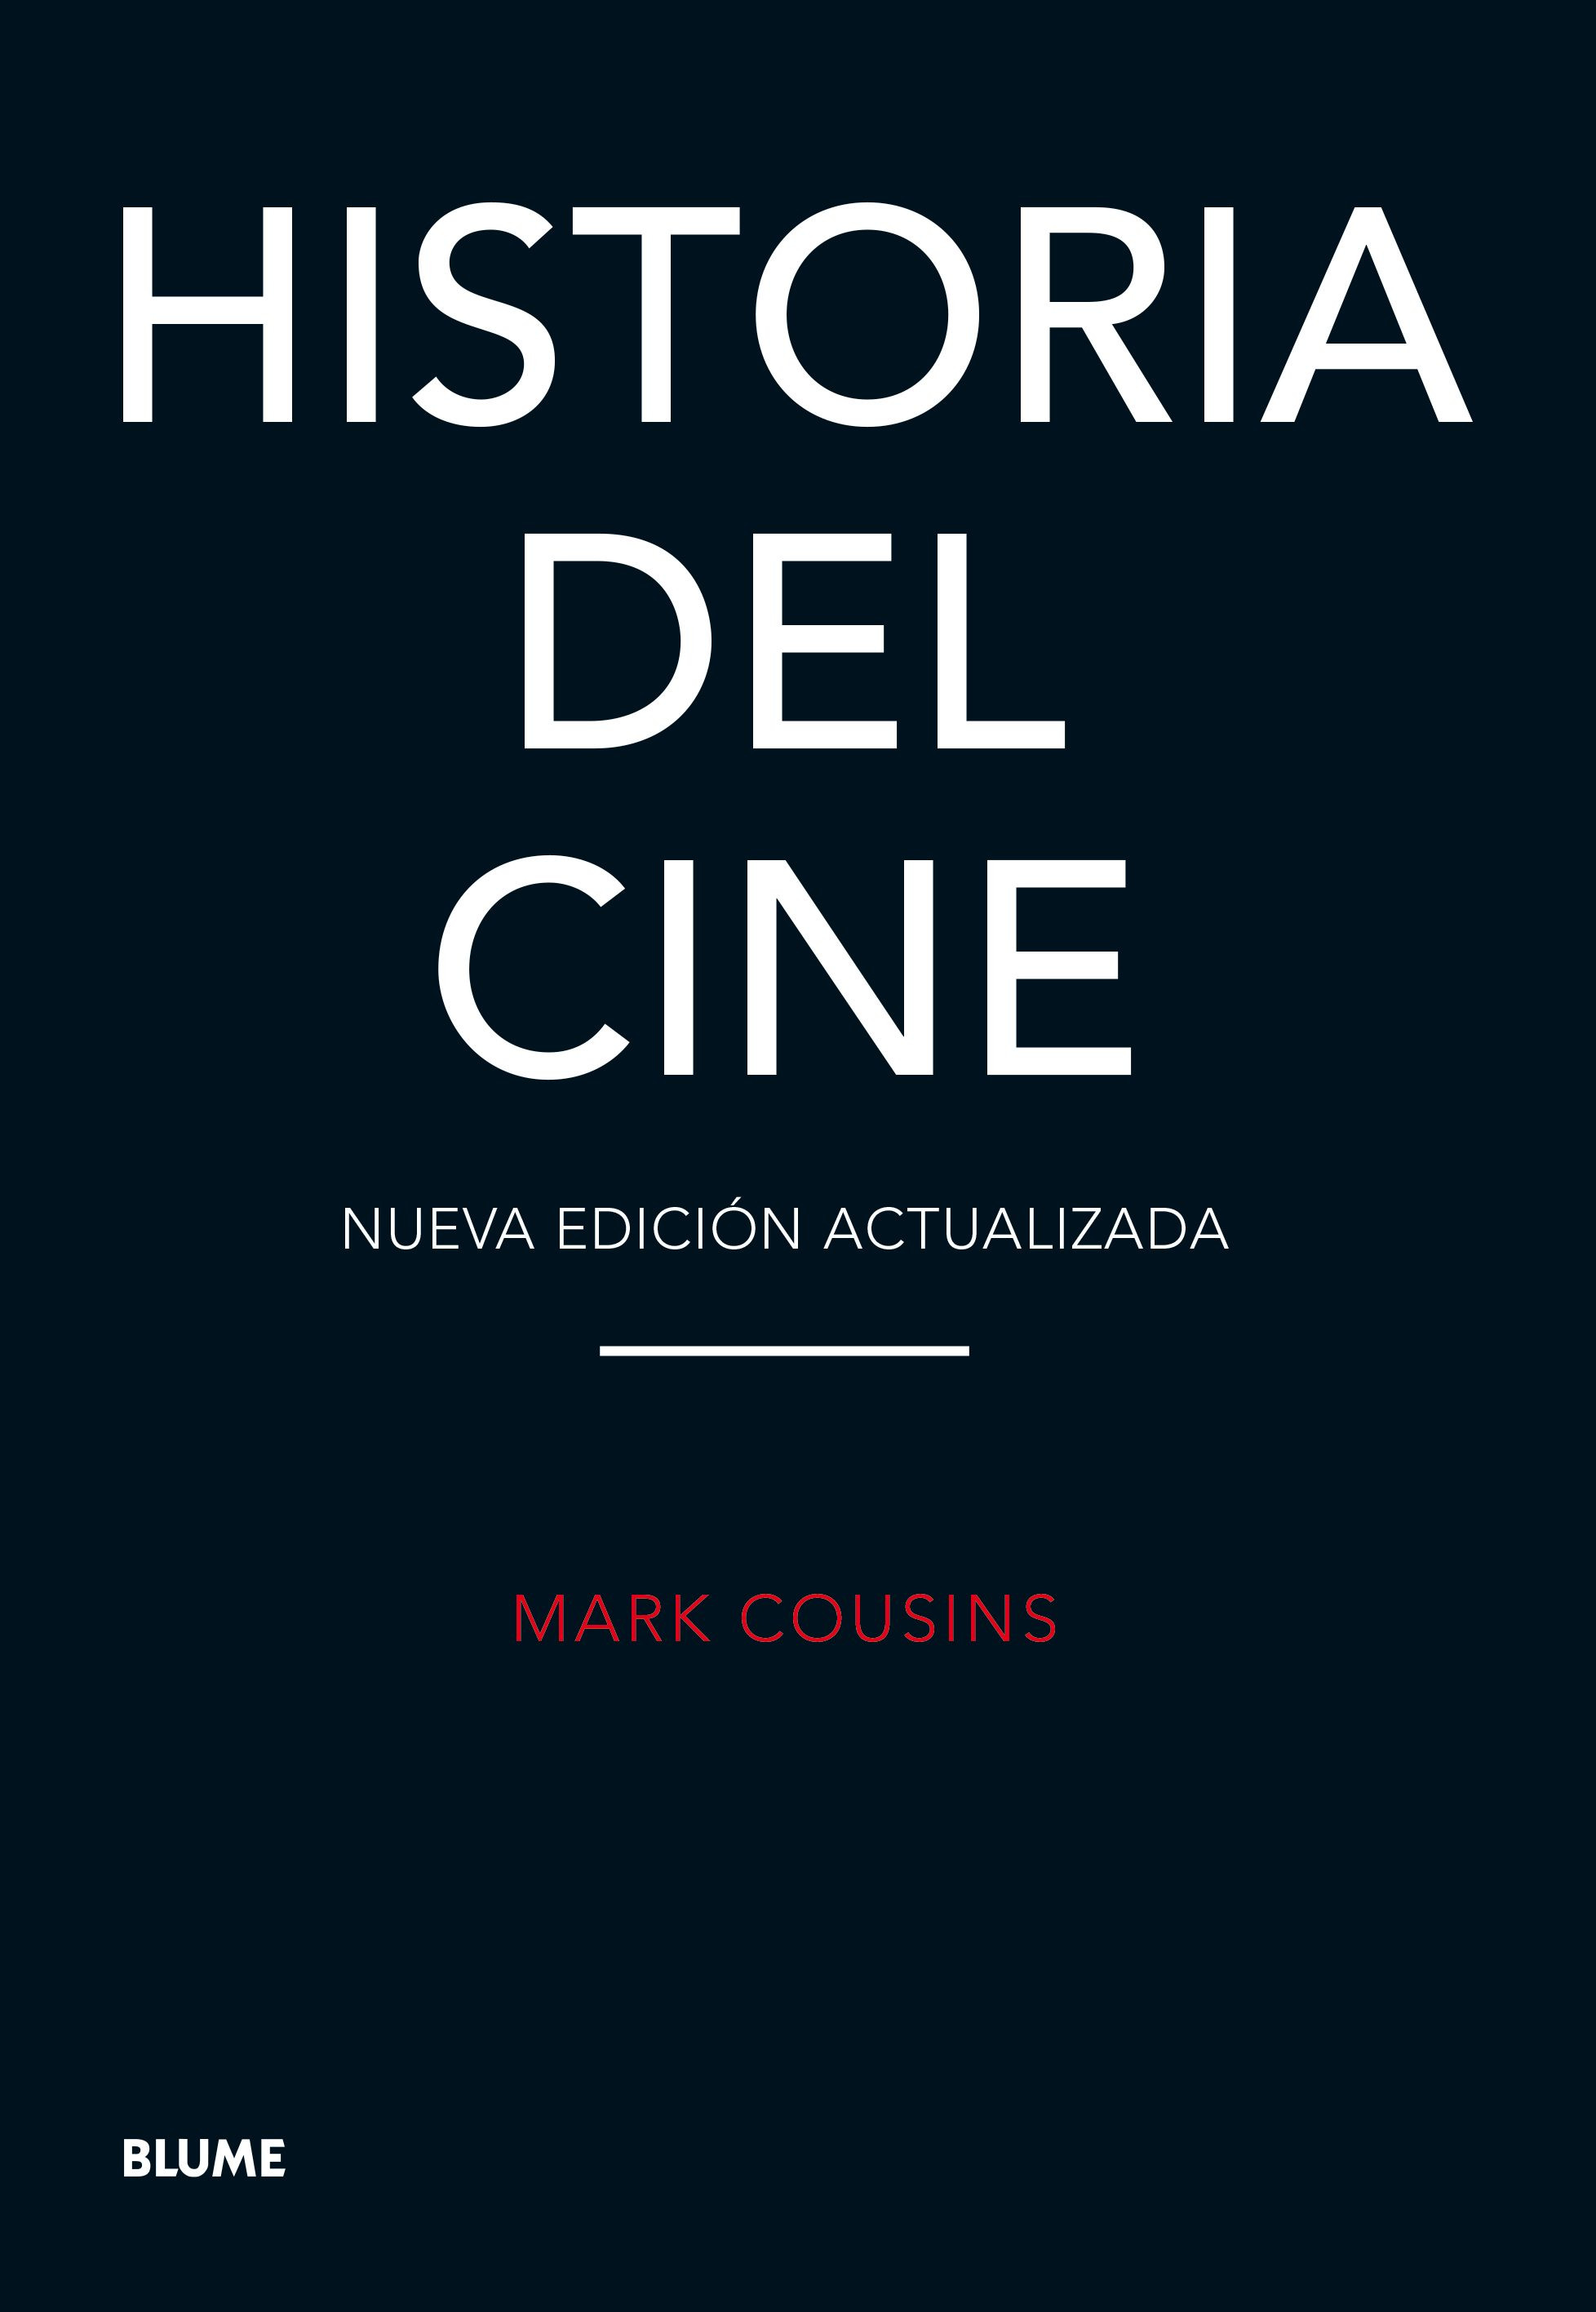 Imagen Historia del cine. Mark Cousins